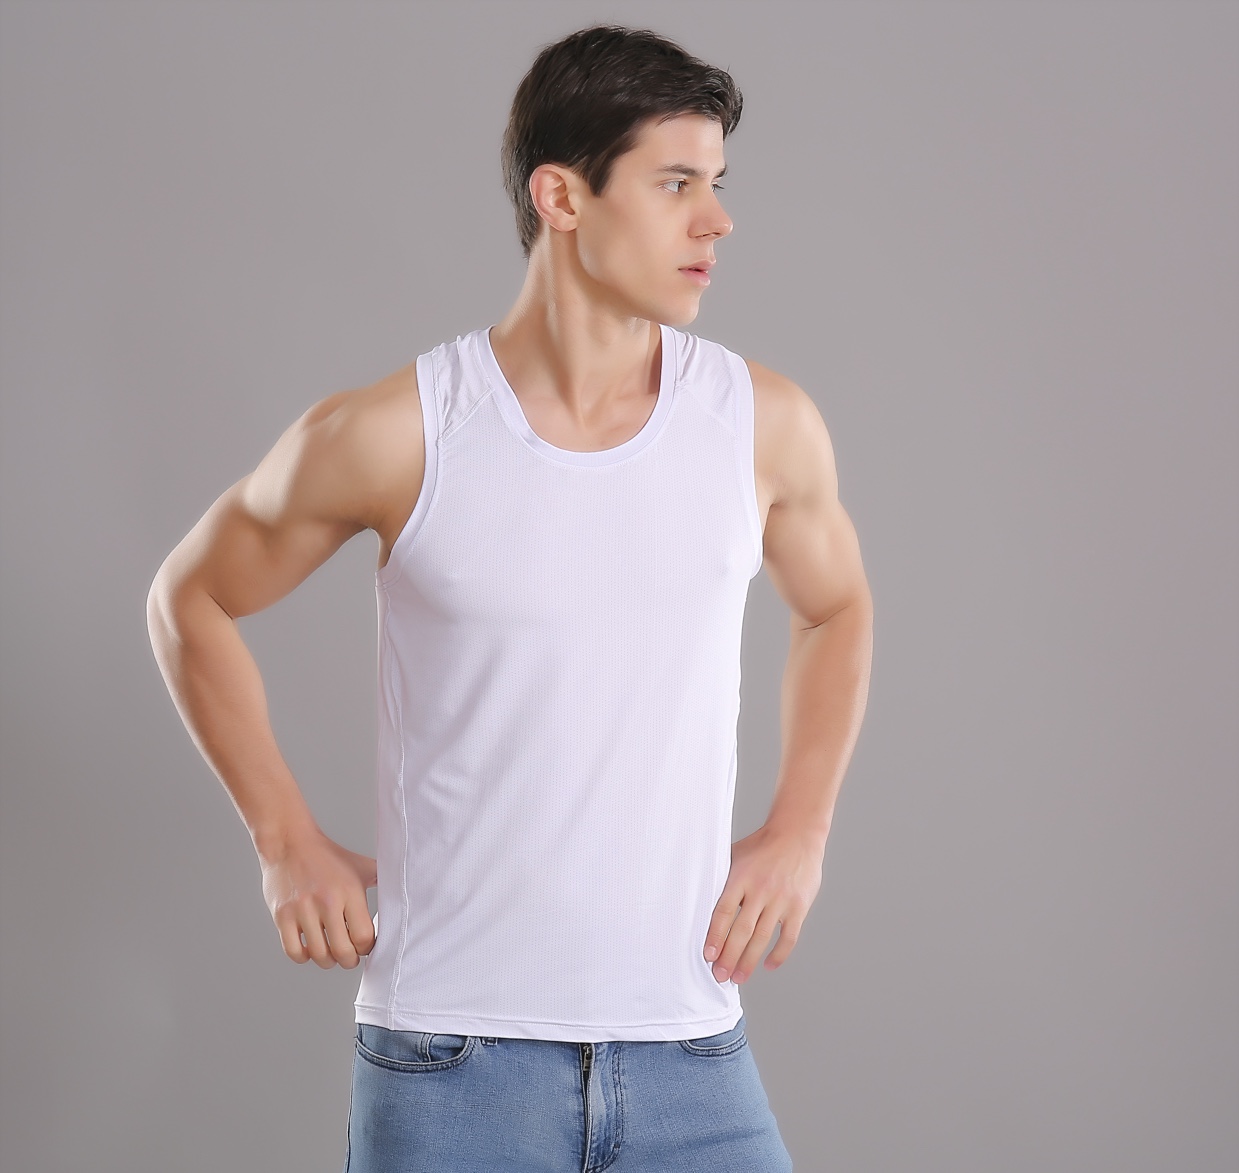 夏季新款男士速干运动背心短袖T恤跑步训练篮球贴身透气网孔健身上衣